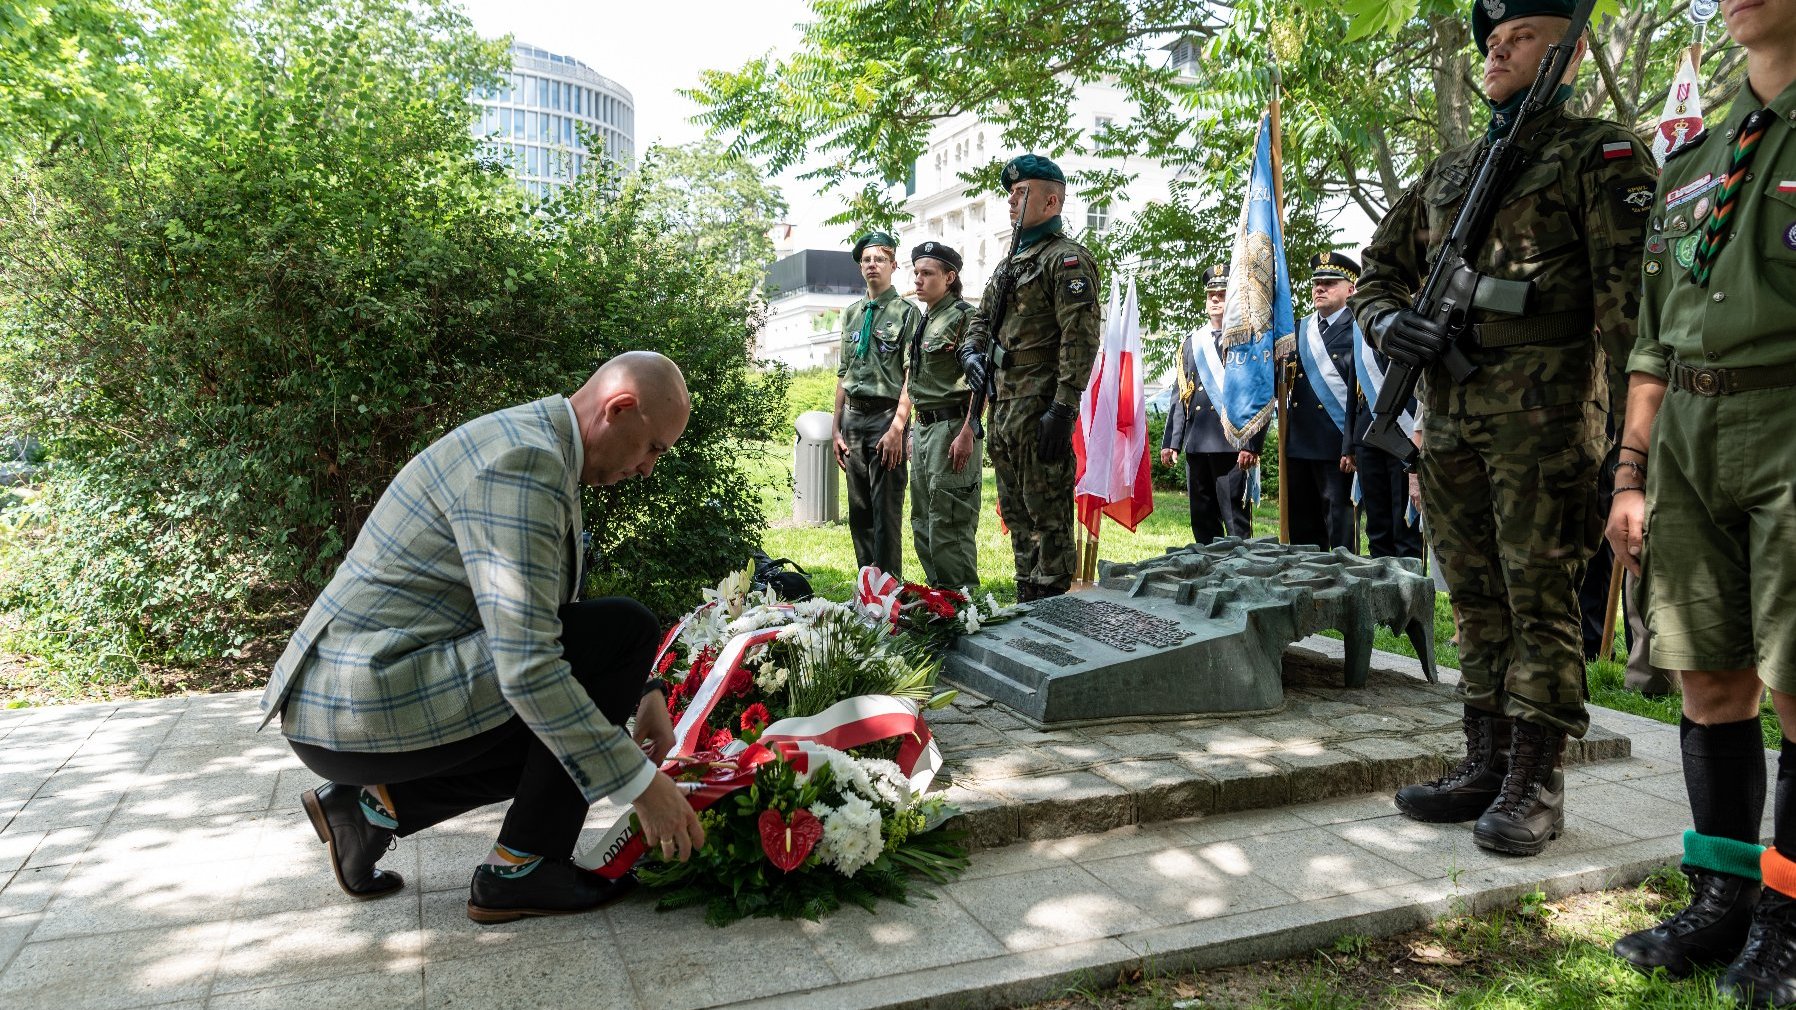 Galeria zdjęć przedstawia obchody Dnia Hołdu i Pamięci Ofiar Reżimu Komunistycznego.